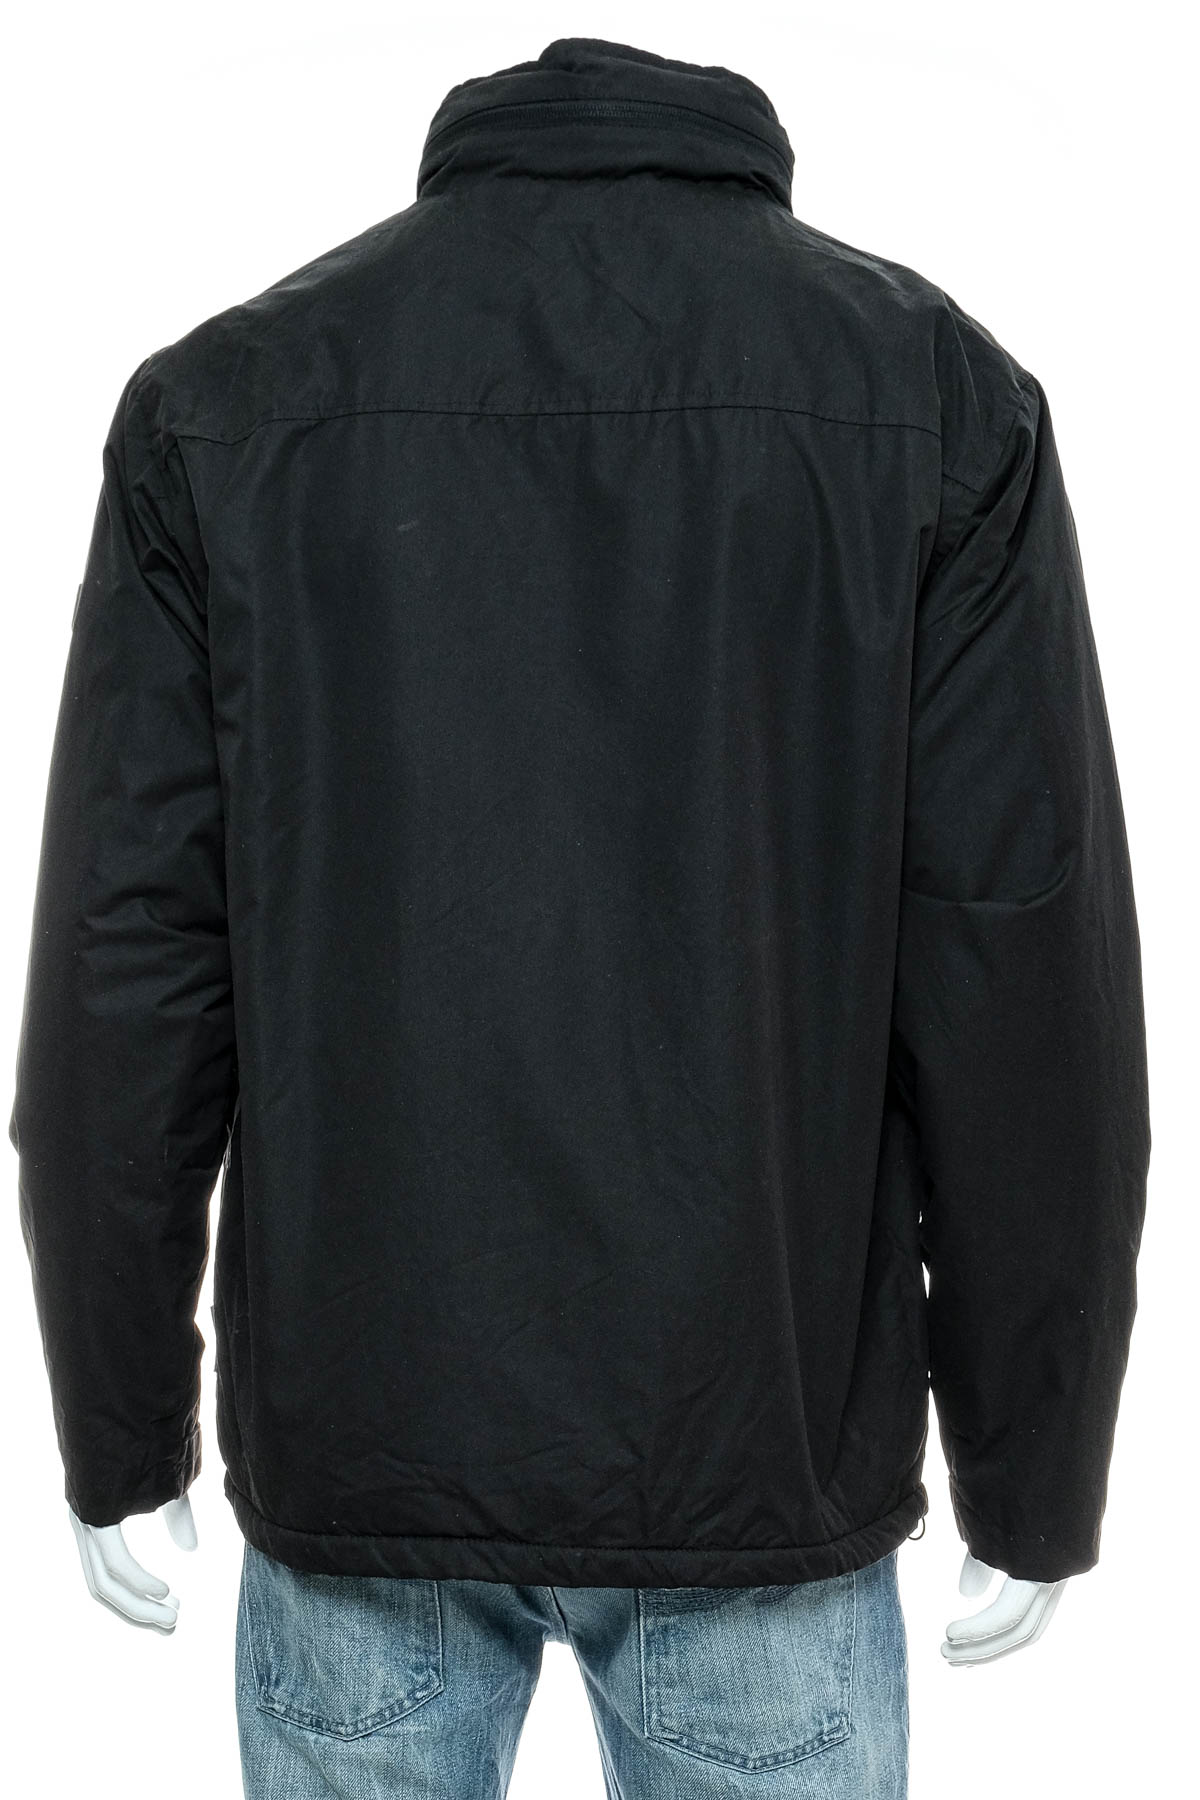 Men's jacket - Rugged Element - 1